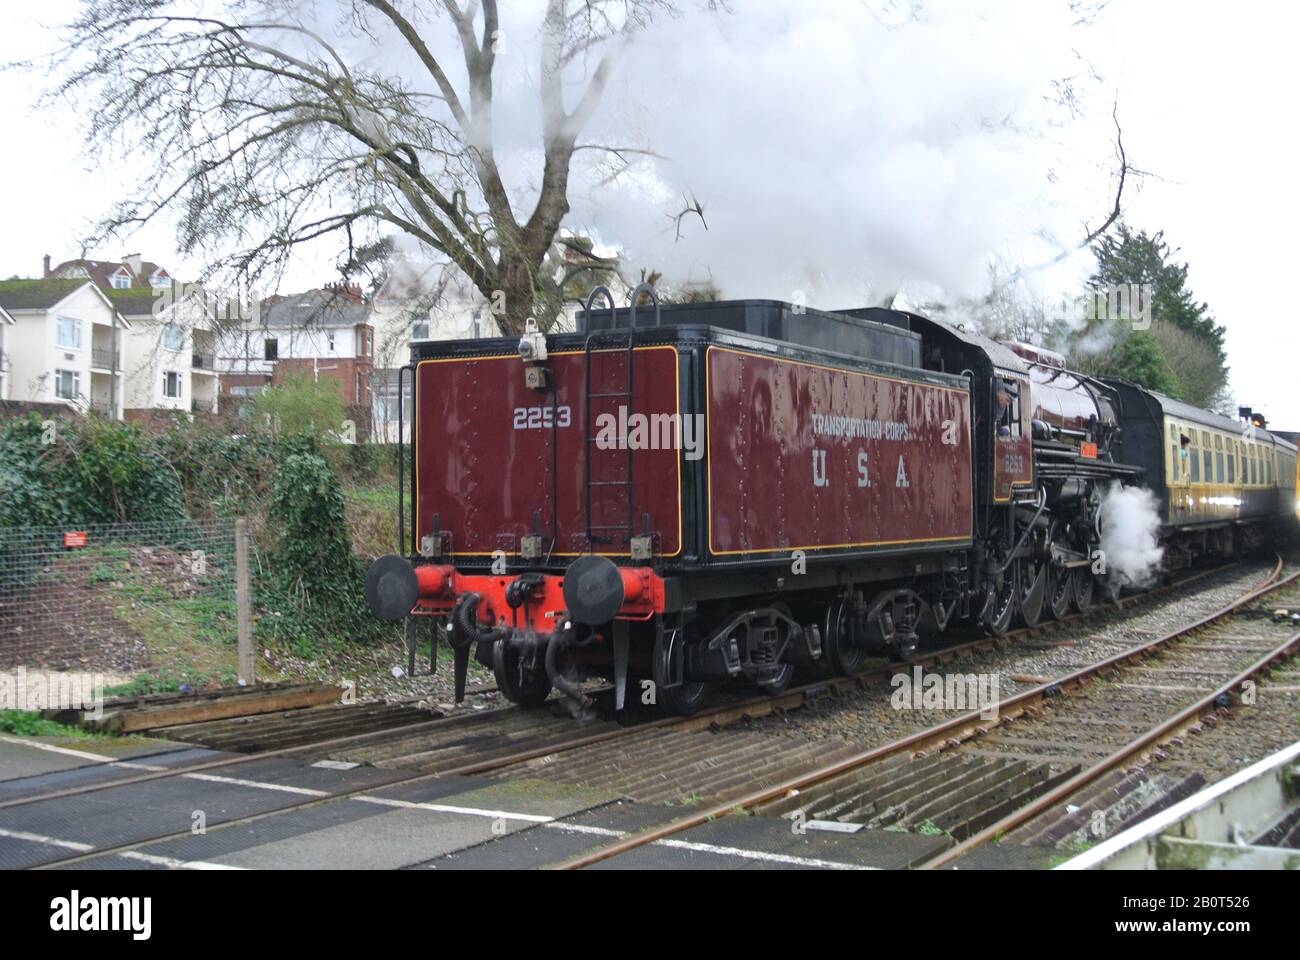 Dampflok 2253 Omaha, die als Teil der Dartmouth Steam Railway in Paignton, Devon, England, Großbritannien betrieben wird. Stockfoto